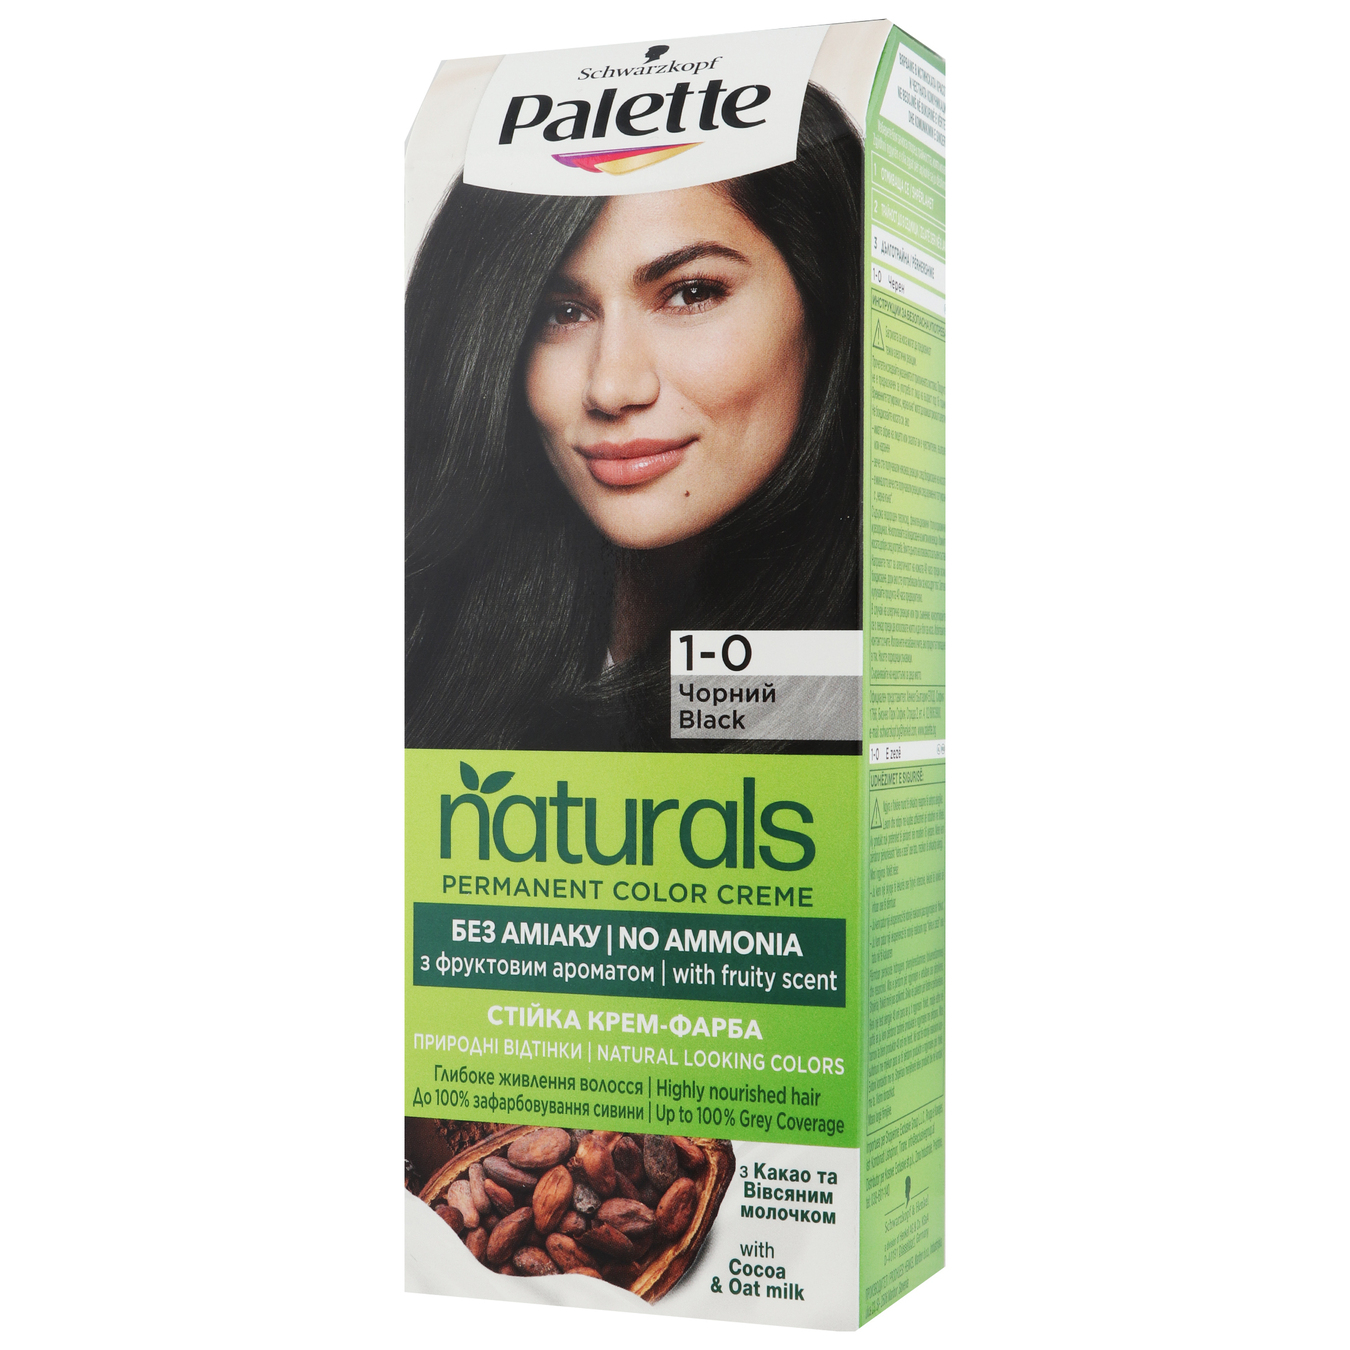 Крем-фарба Palette Naturals 1-0 Чорний для волосся без аміаку стійка 110мл 3